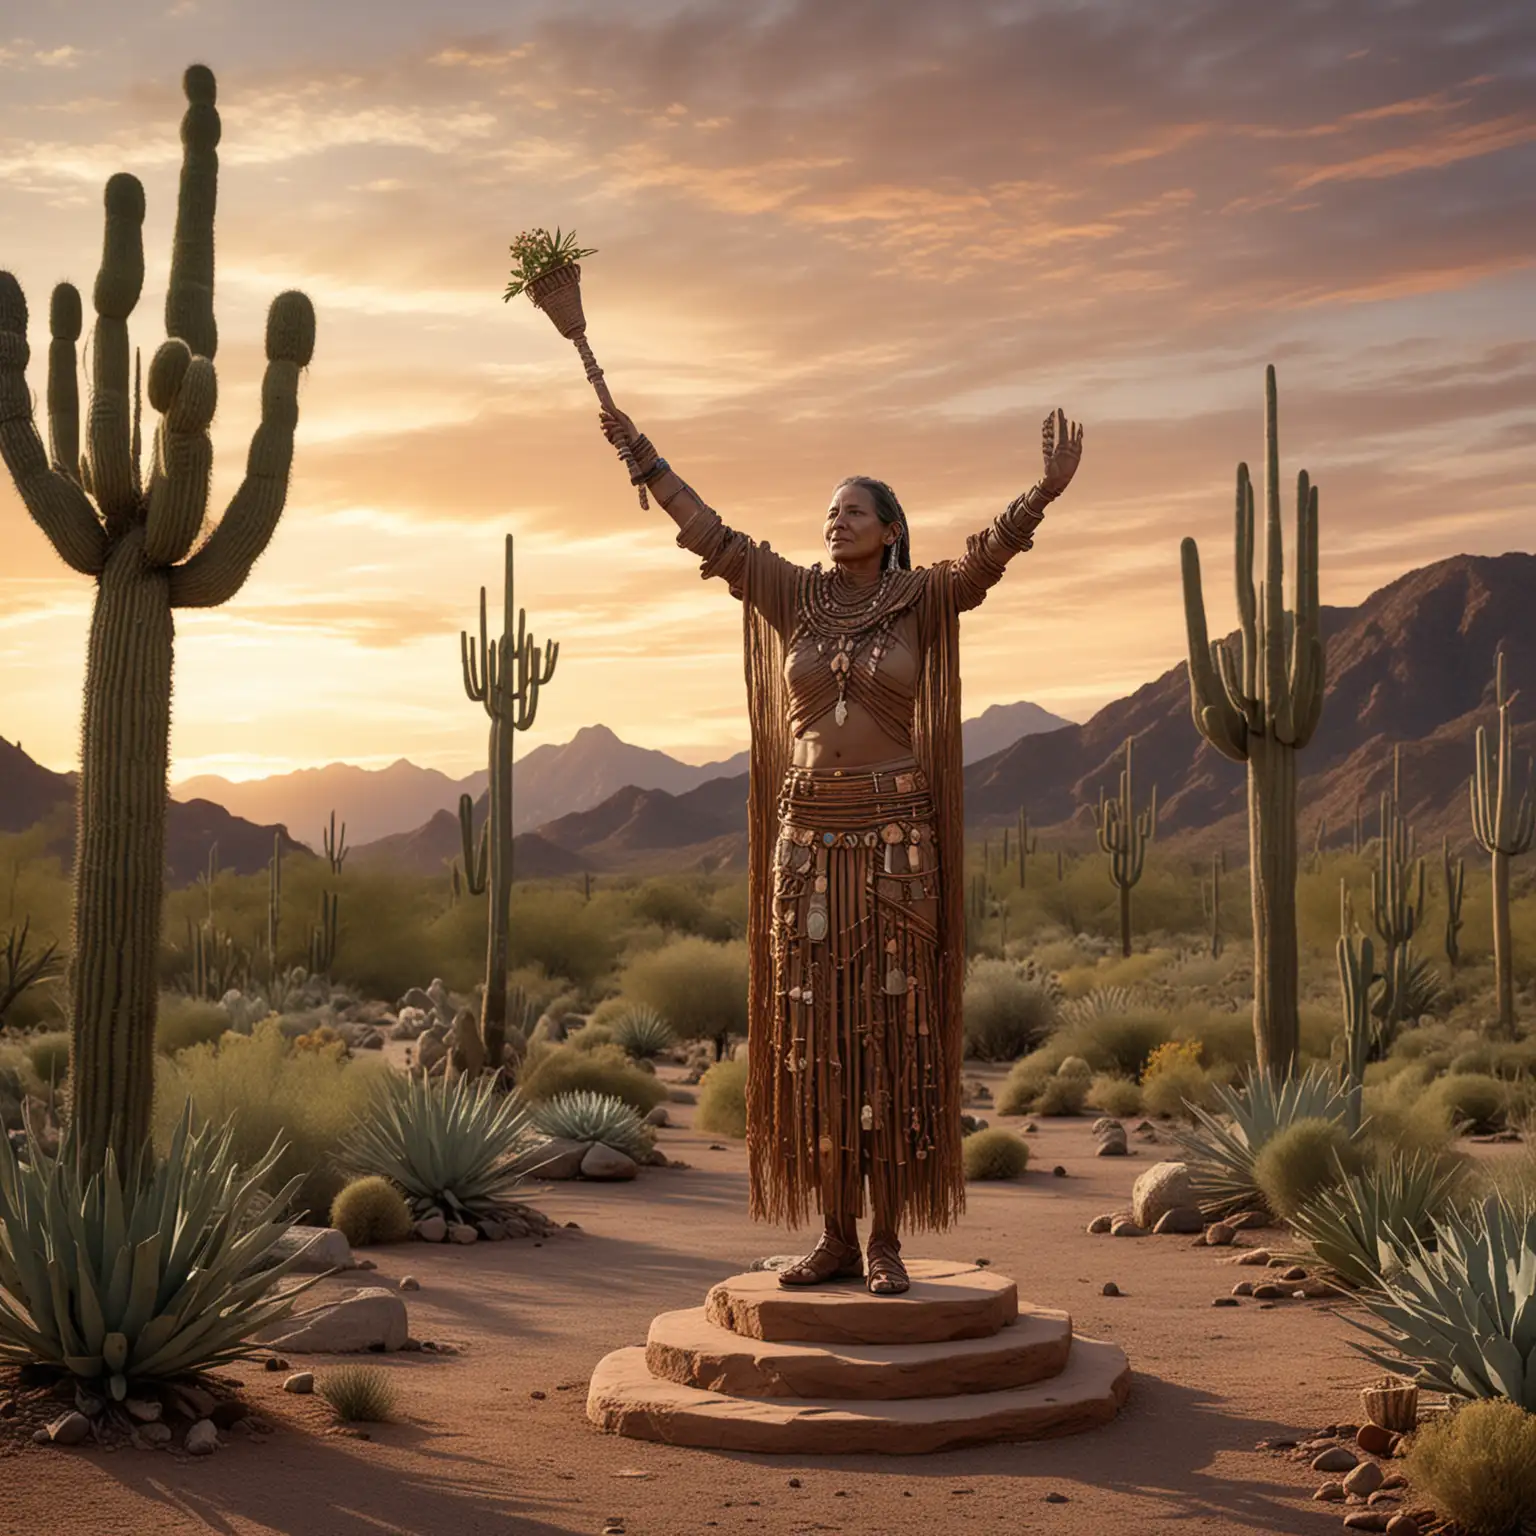 Tohono Oodham Elder Statue Overlooking Sonoran Desert at Sunset